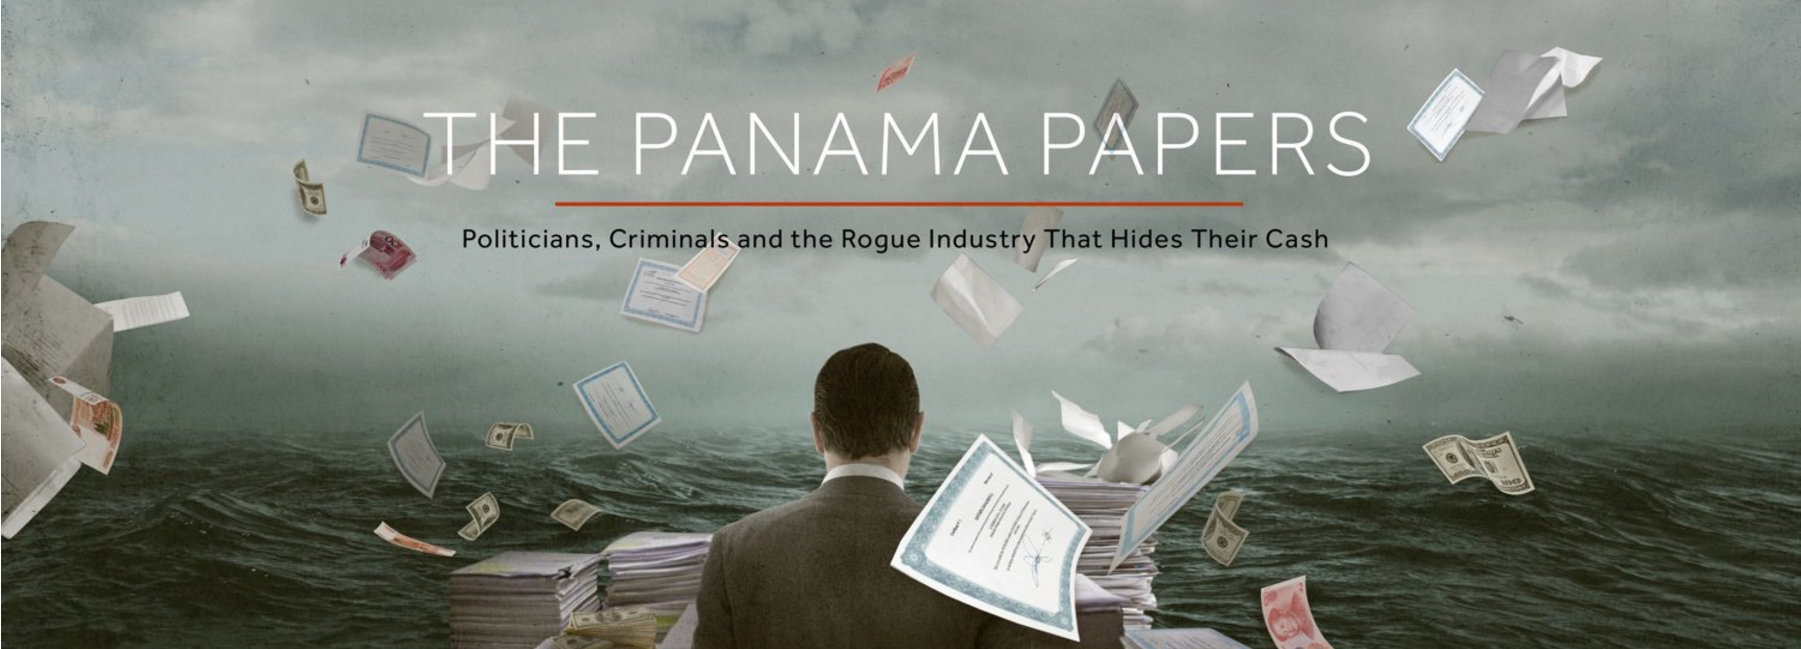 L'enquête sur les Panama Papers a mobilisé des journalistes du monde entier.